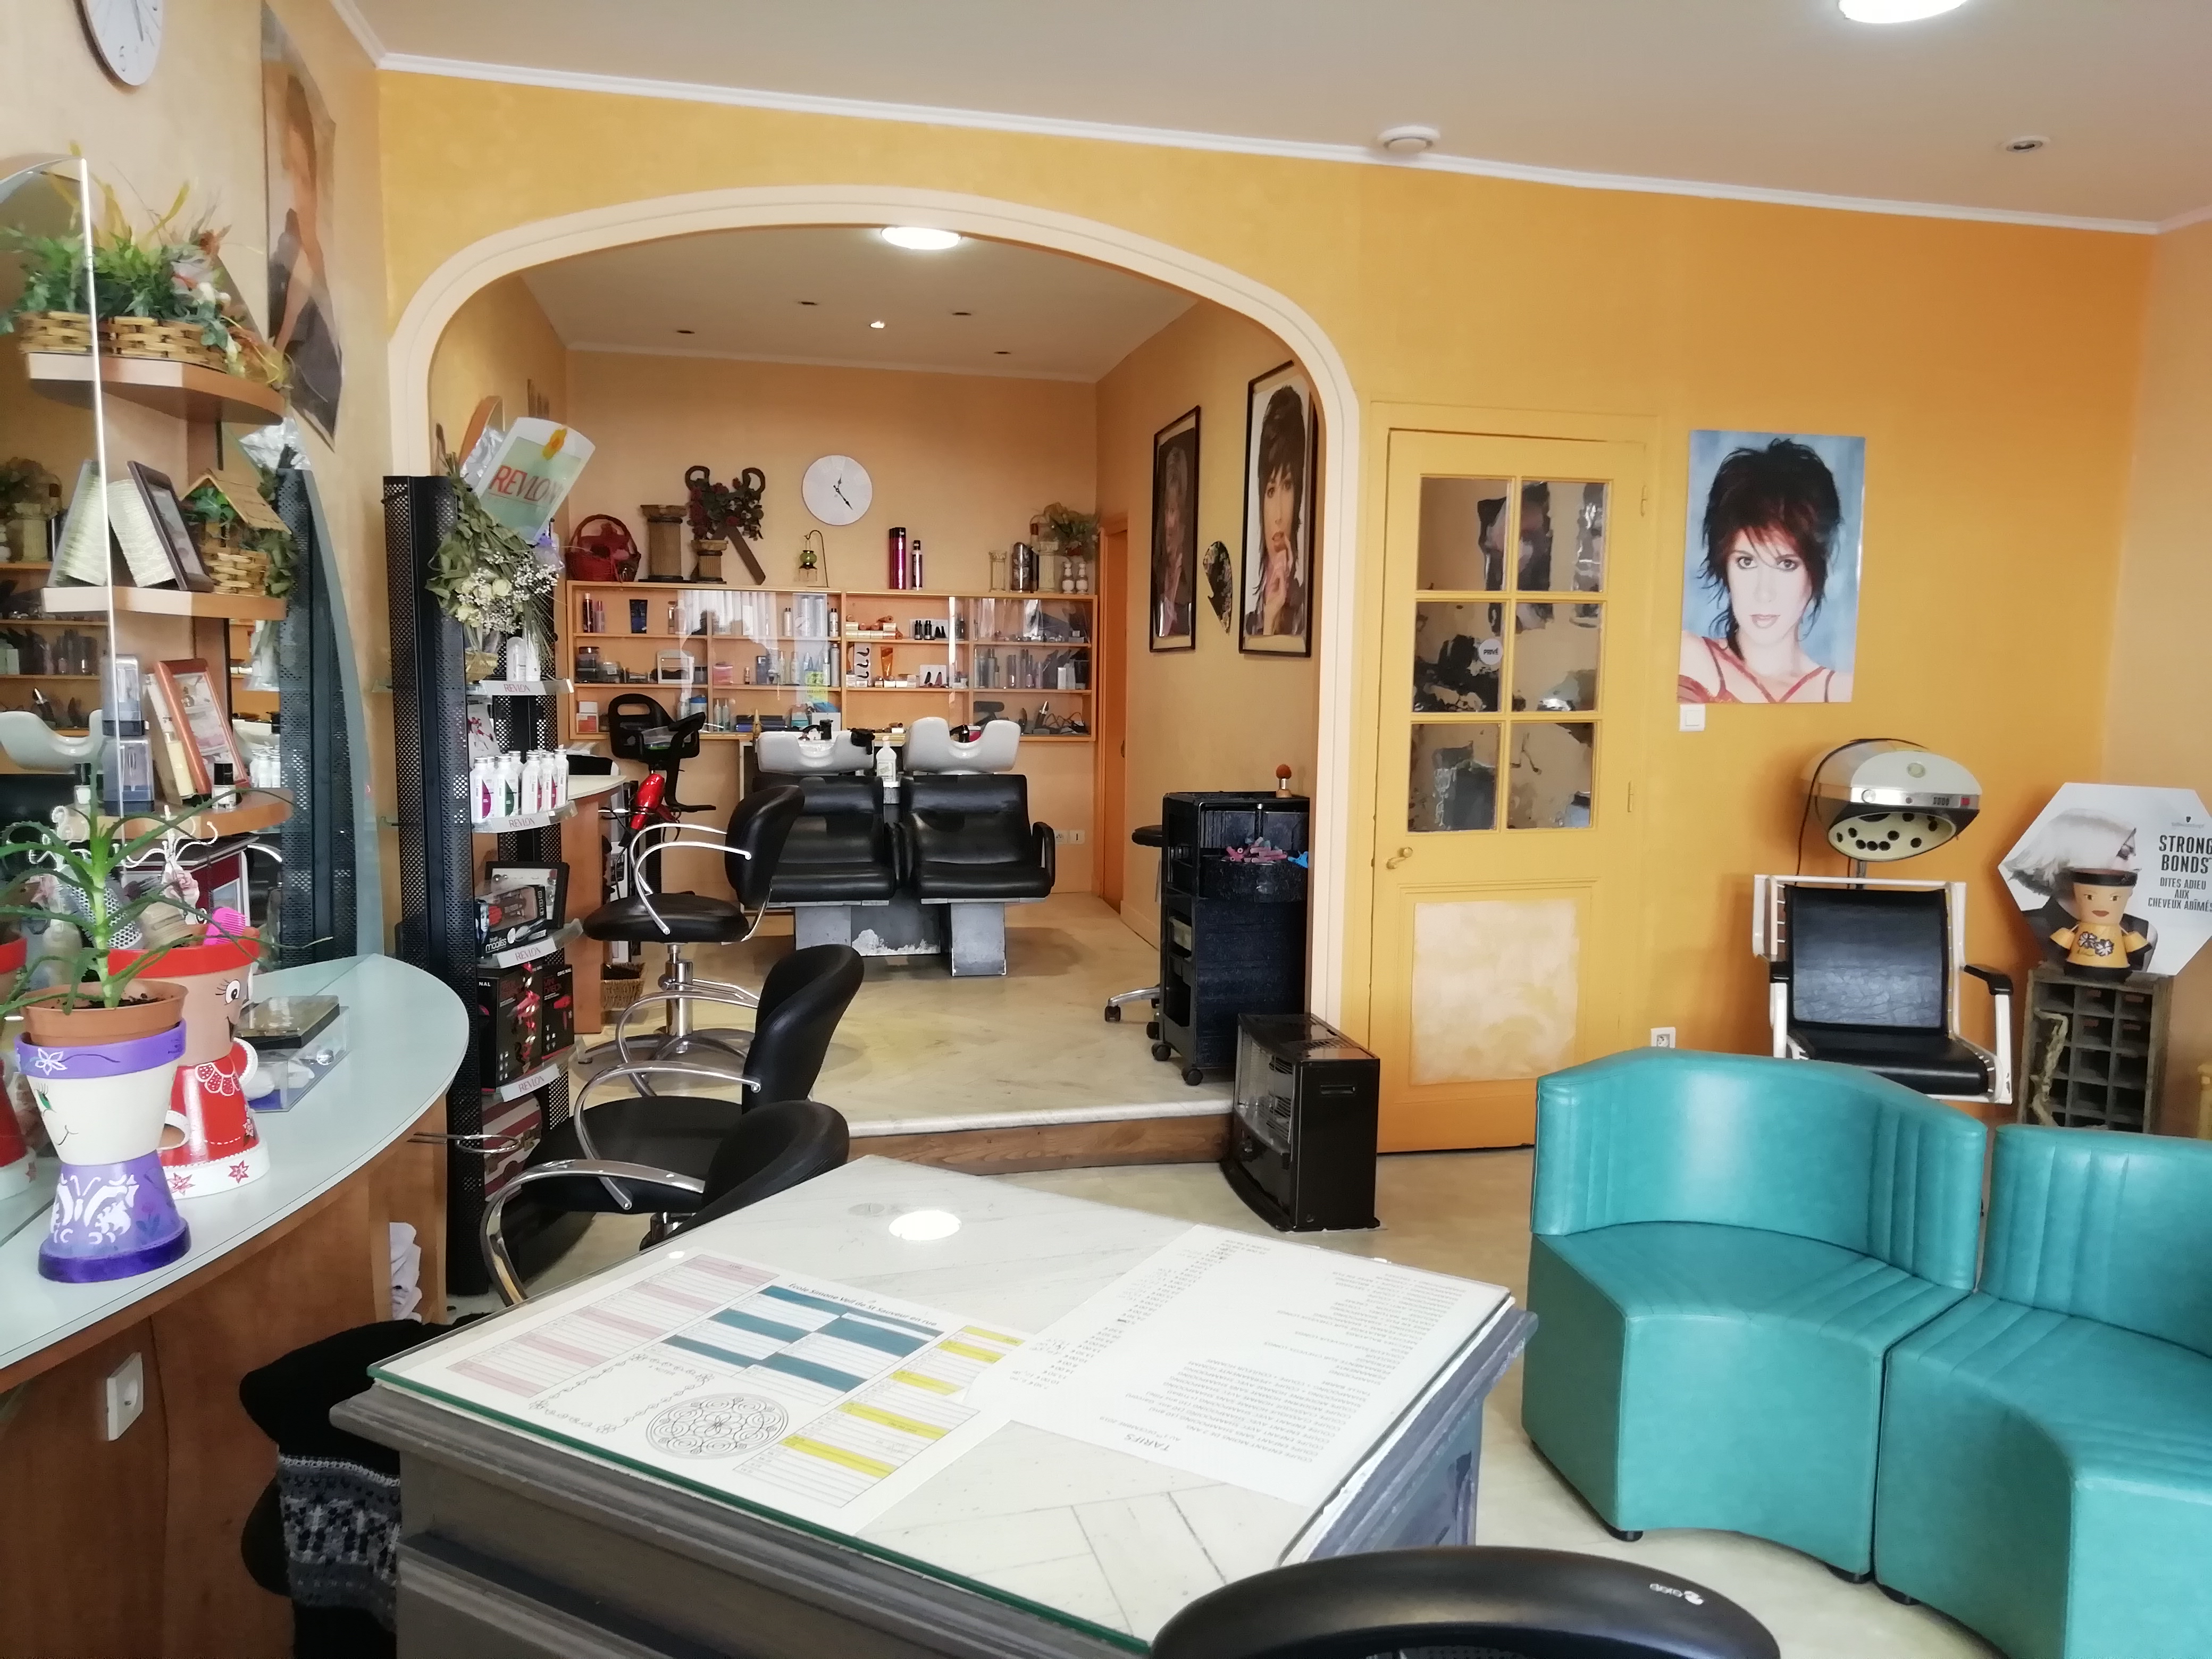 Vends salon de coiffure, après 37 années d'activités, pour projet de départ à la retraite.
Salon crée en 1987 dans un village de plus de mille habitants.
3 coiffeuses, 2 bacs à shampoings, pièce attenante, d'une superficie totale d'environ 50 m2.
Clientèle fidèle.